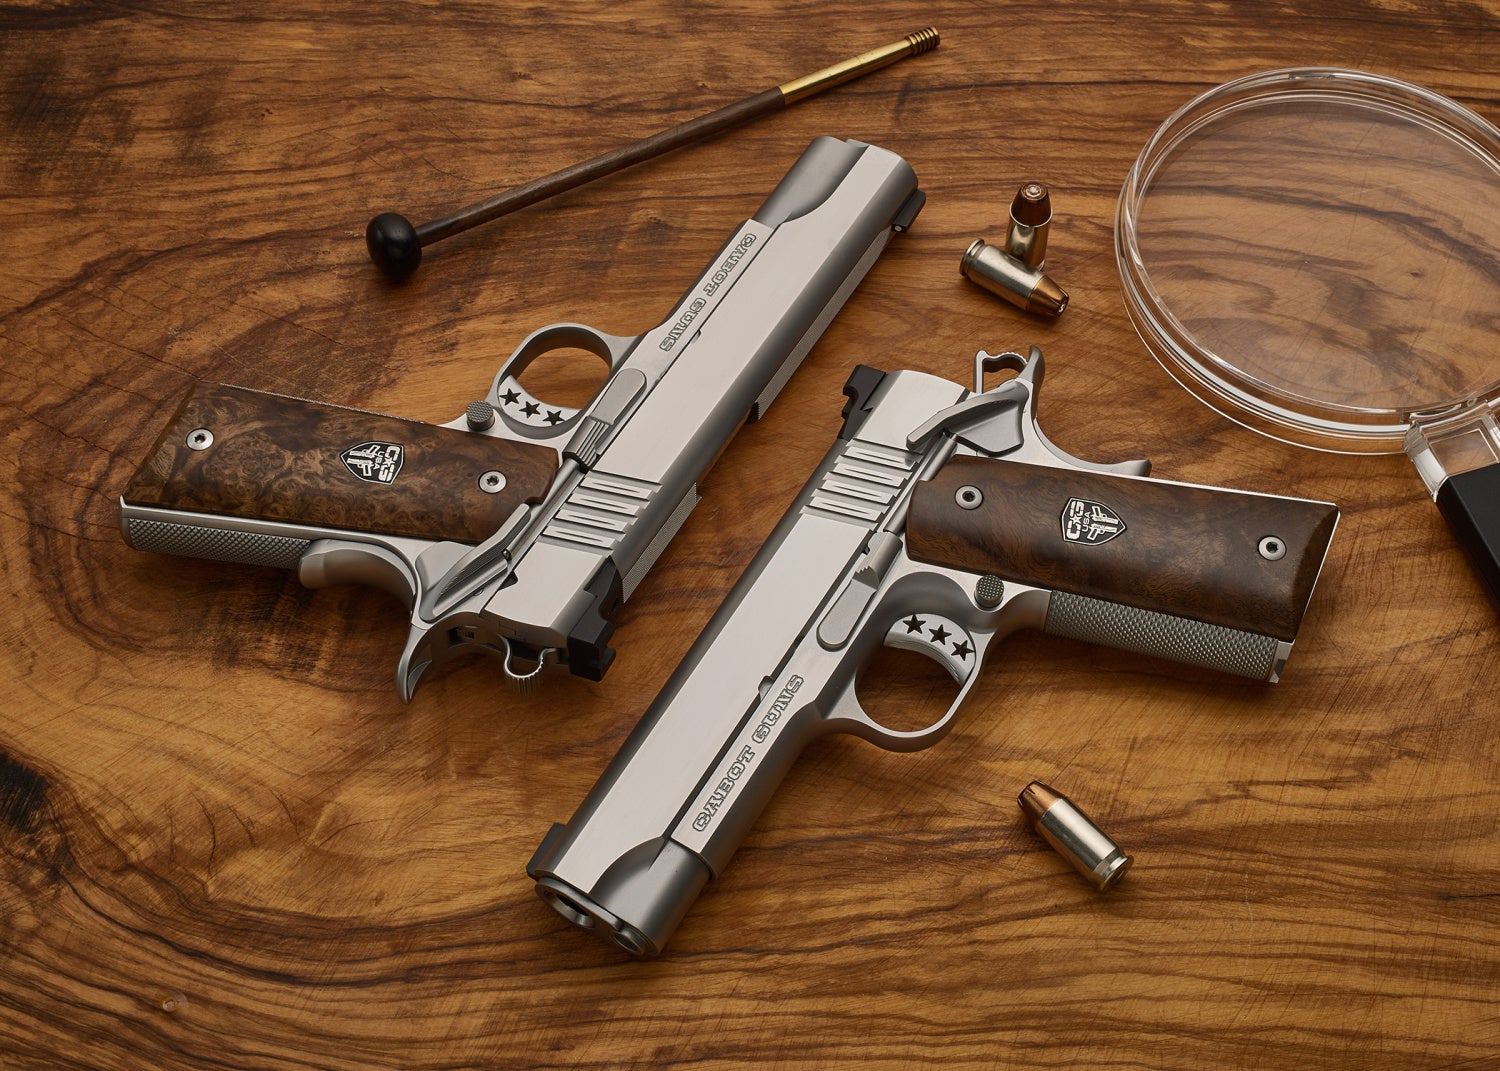 Cabot Guns Reintroduces The National Standard Pistol (7)